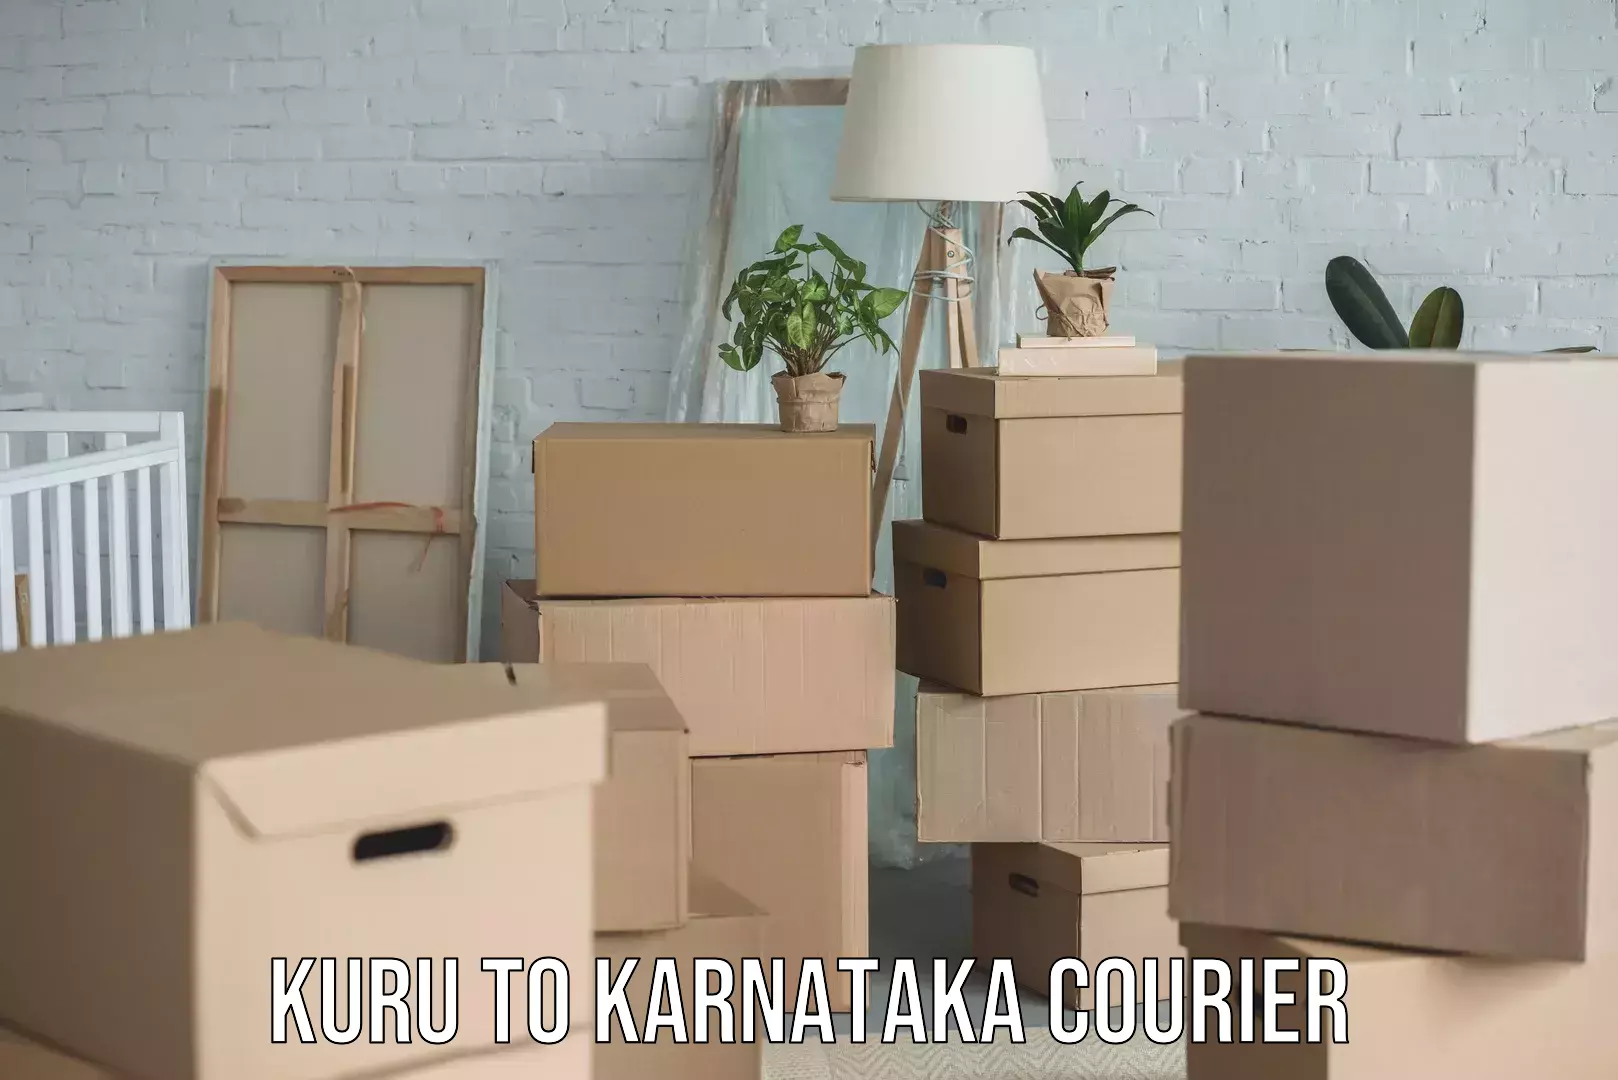 Efficient packing and moving Kuru to Karnataka